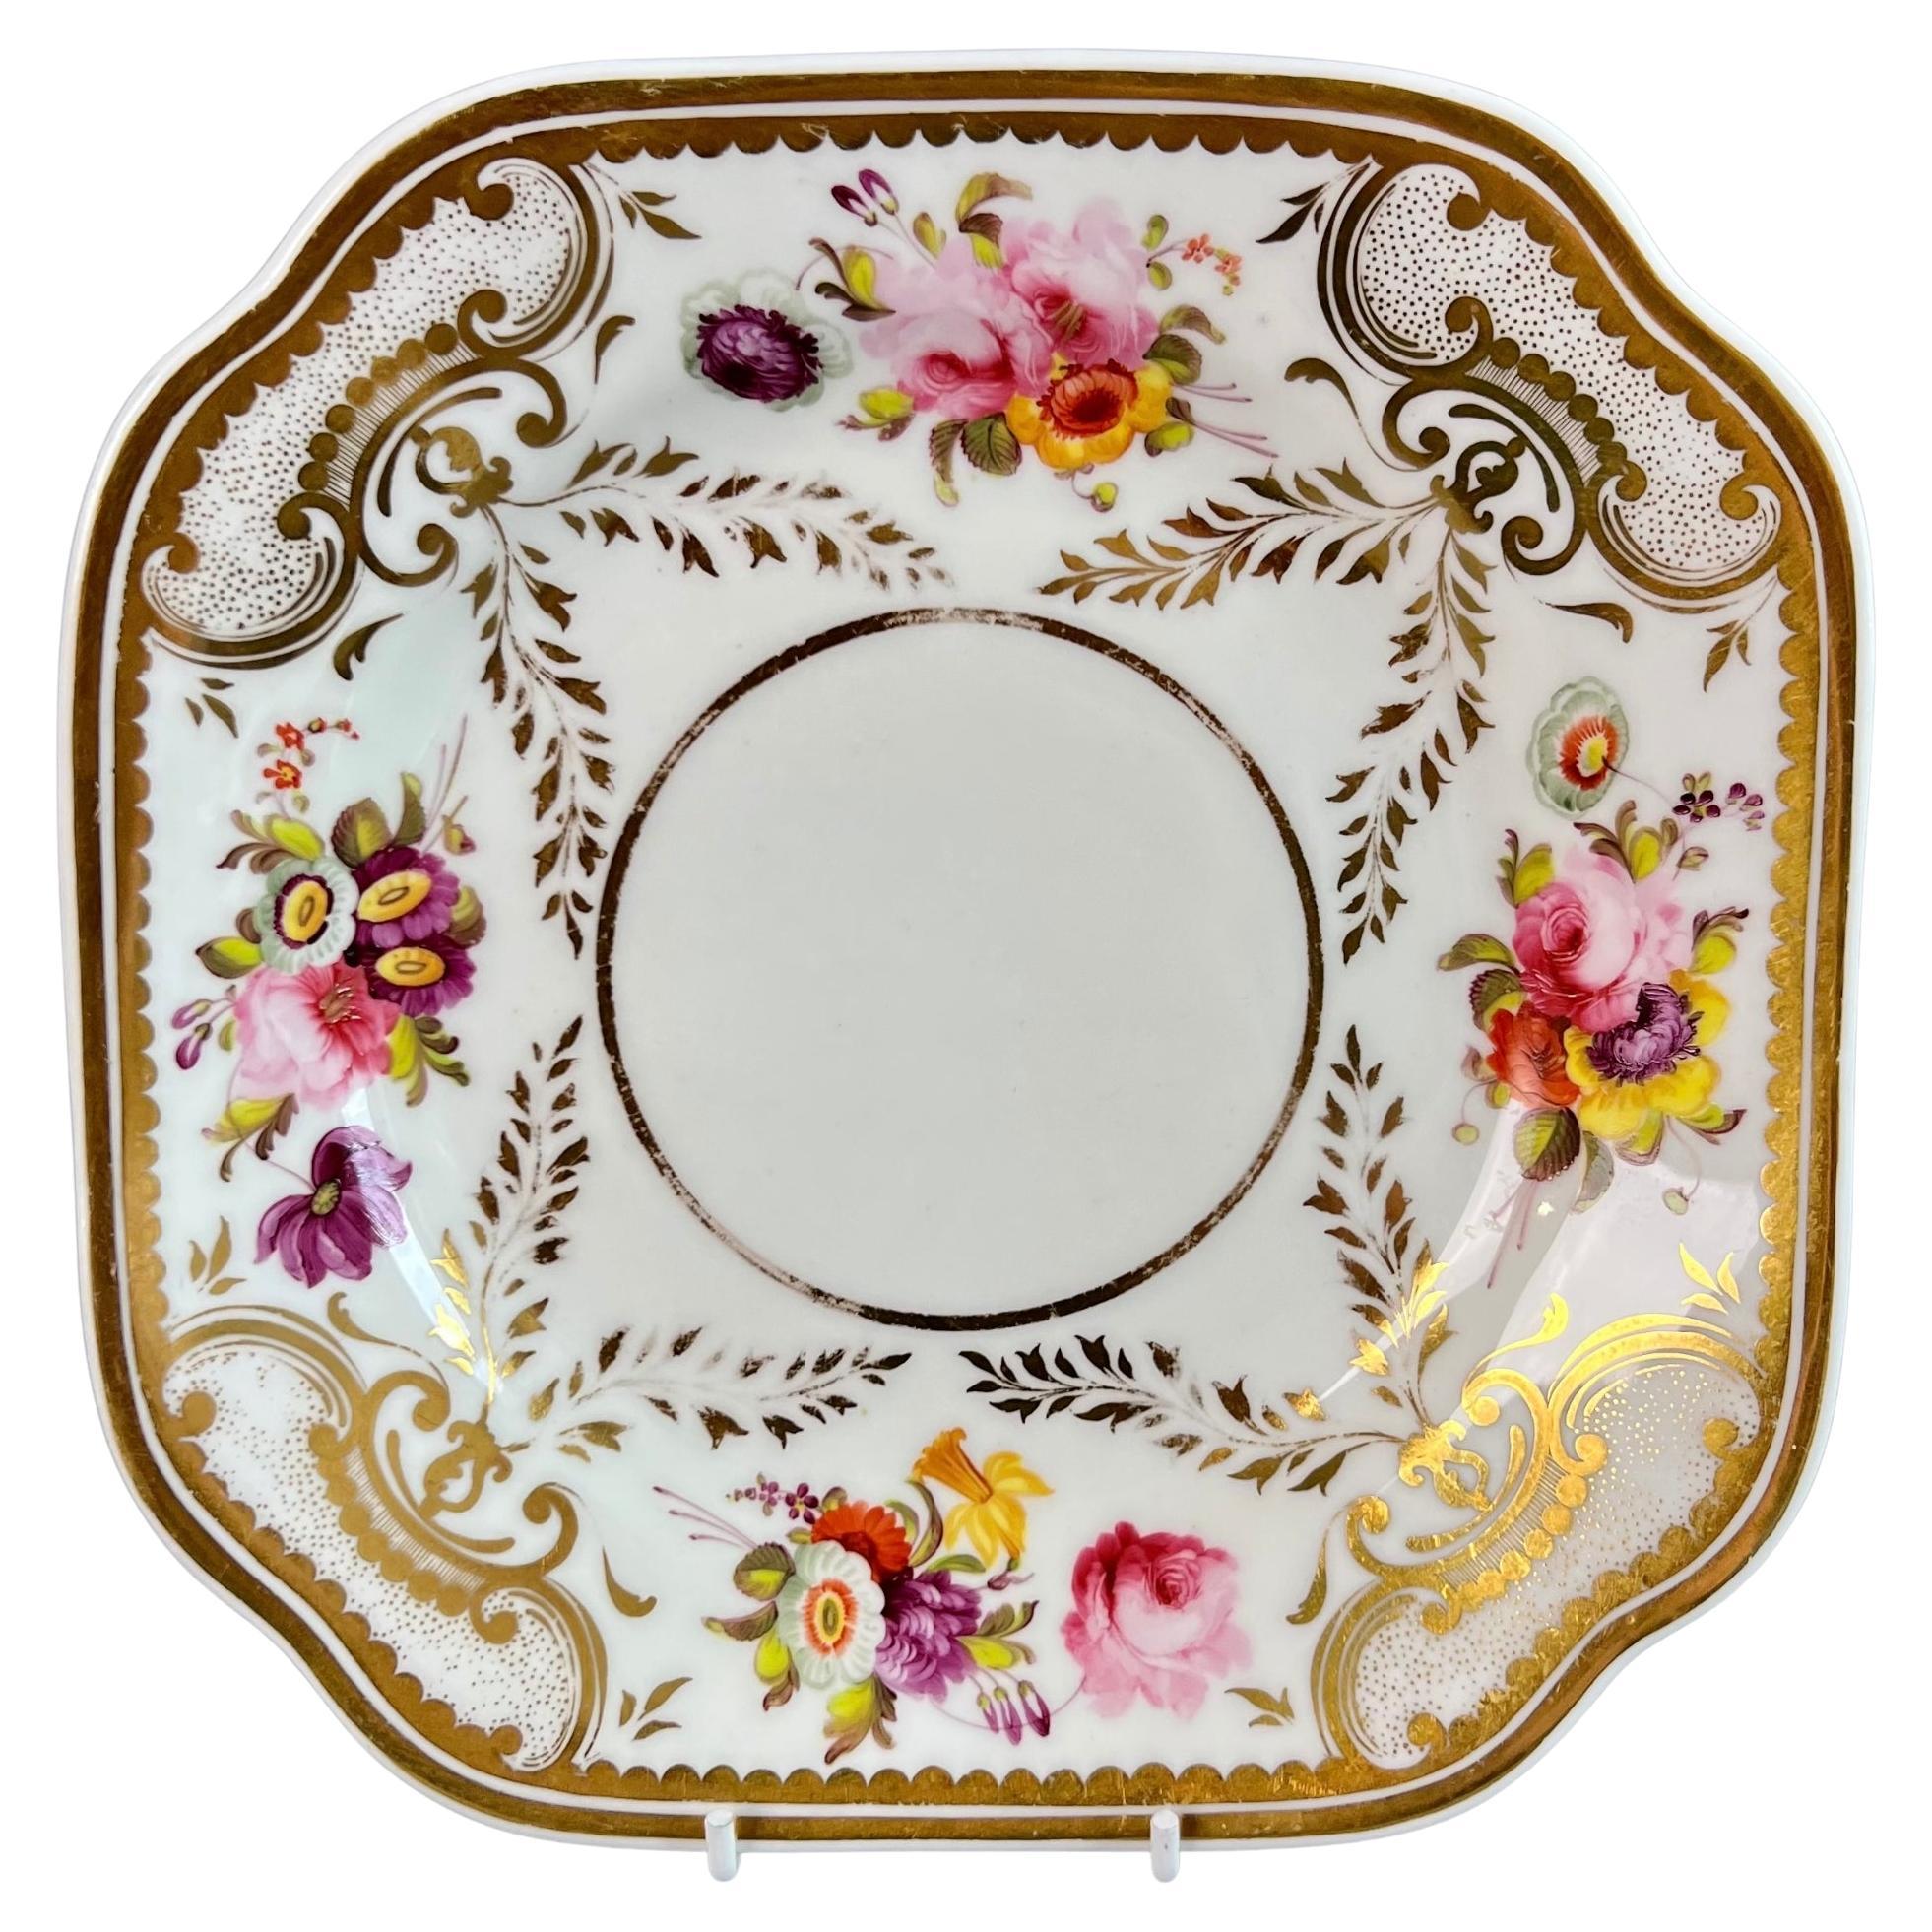 Assiette H&R Daniel, blanche, florale, forme étrusque, Regency, vers 1825